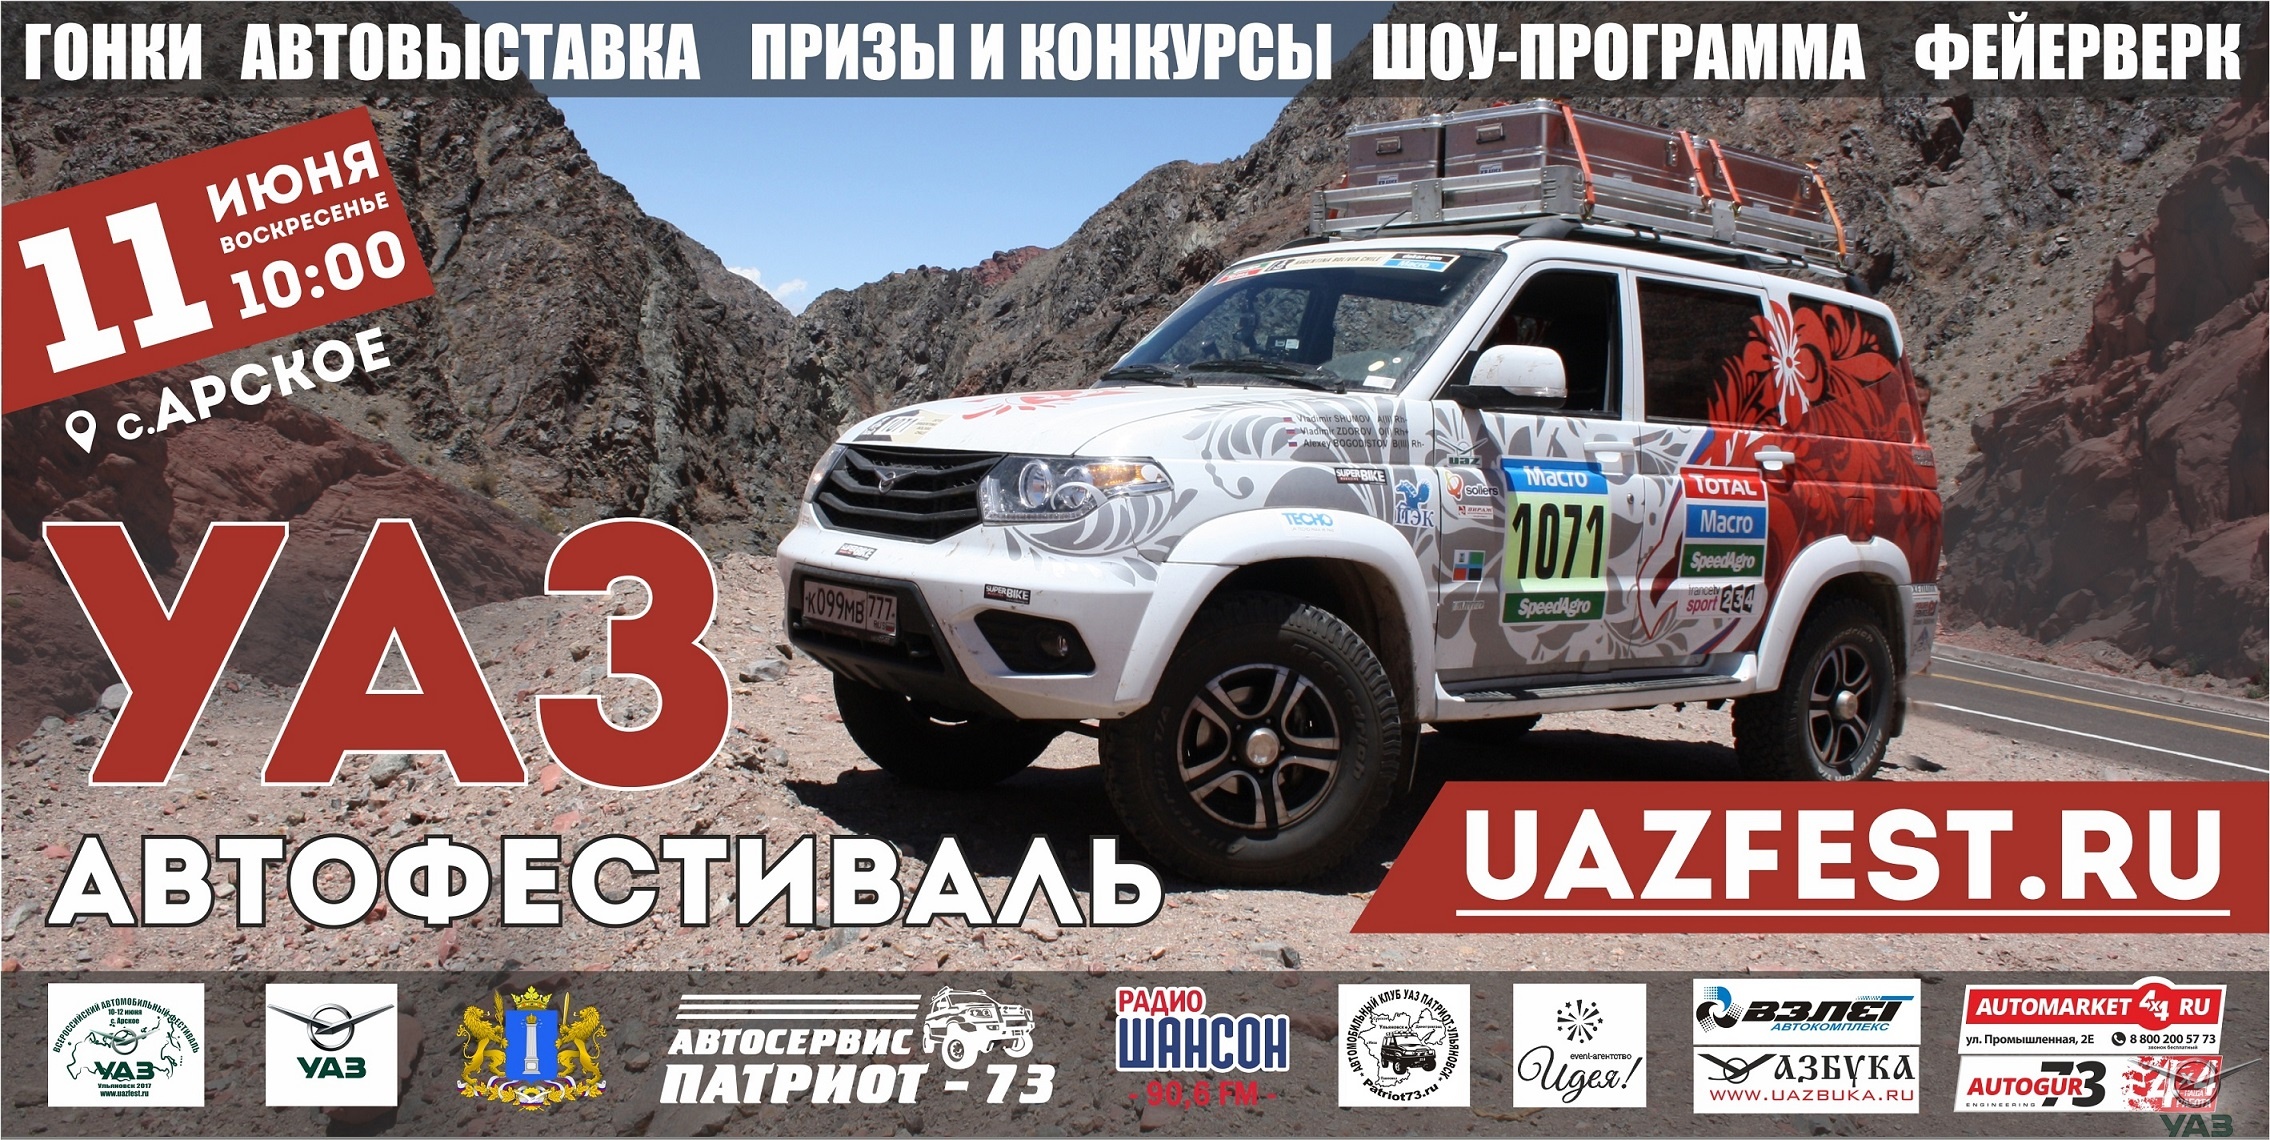 Всероссийский «УАЗ-фестиваль 2017» состоится в Ульяновской области